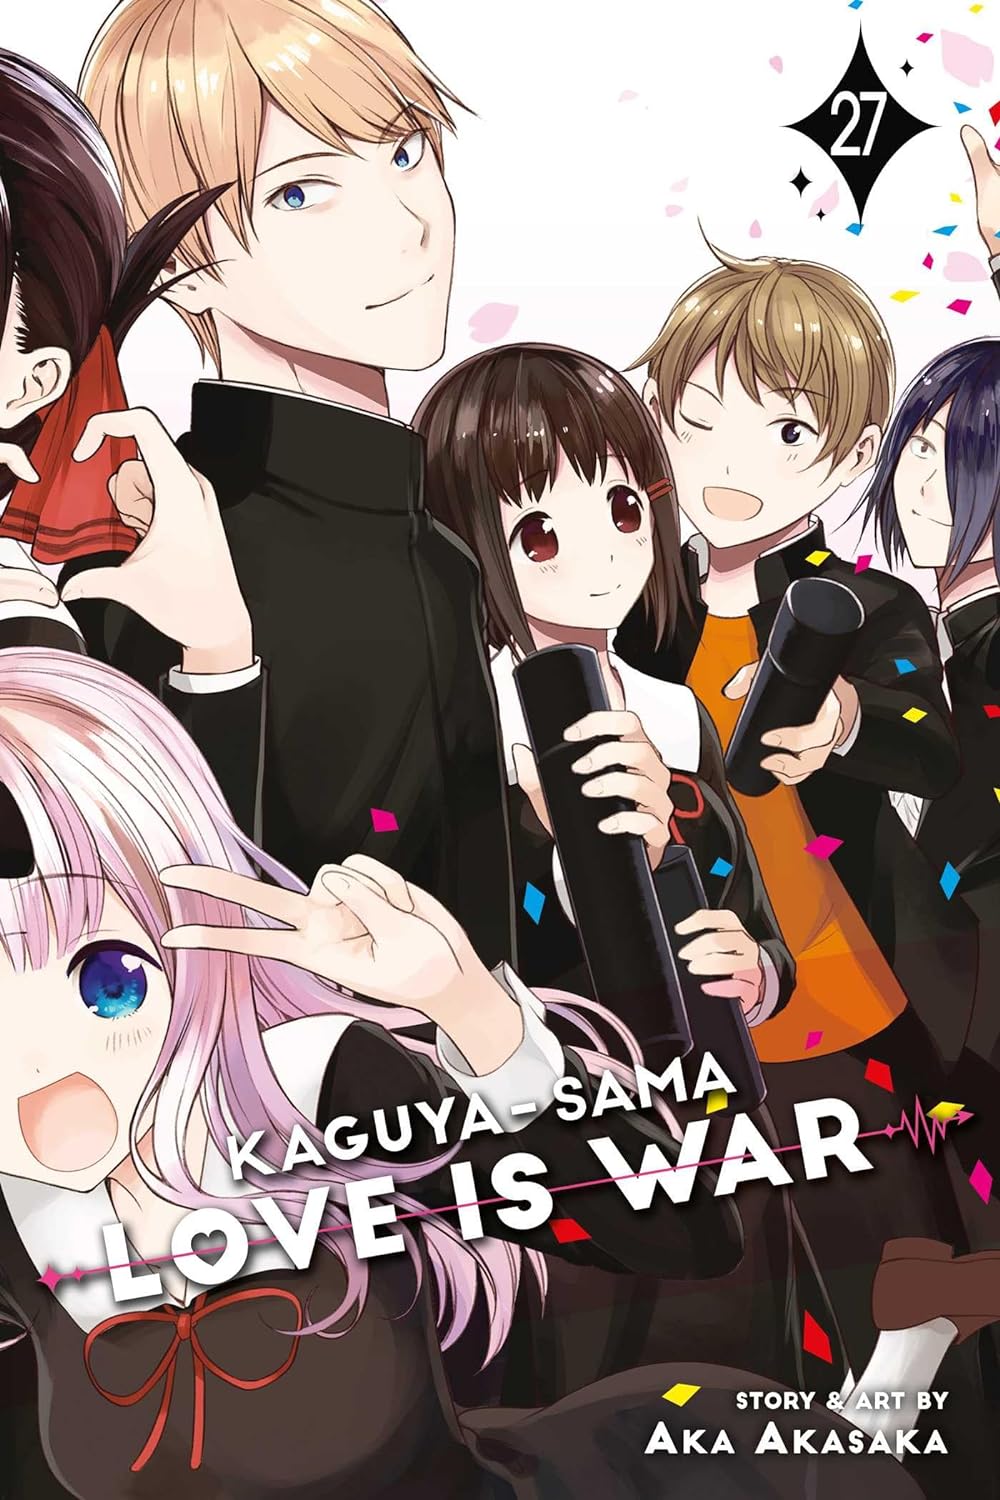 (05/12/2023) Kaguya-sama: Love Is War Vol. 27